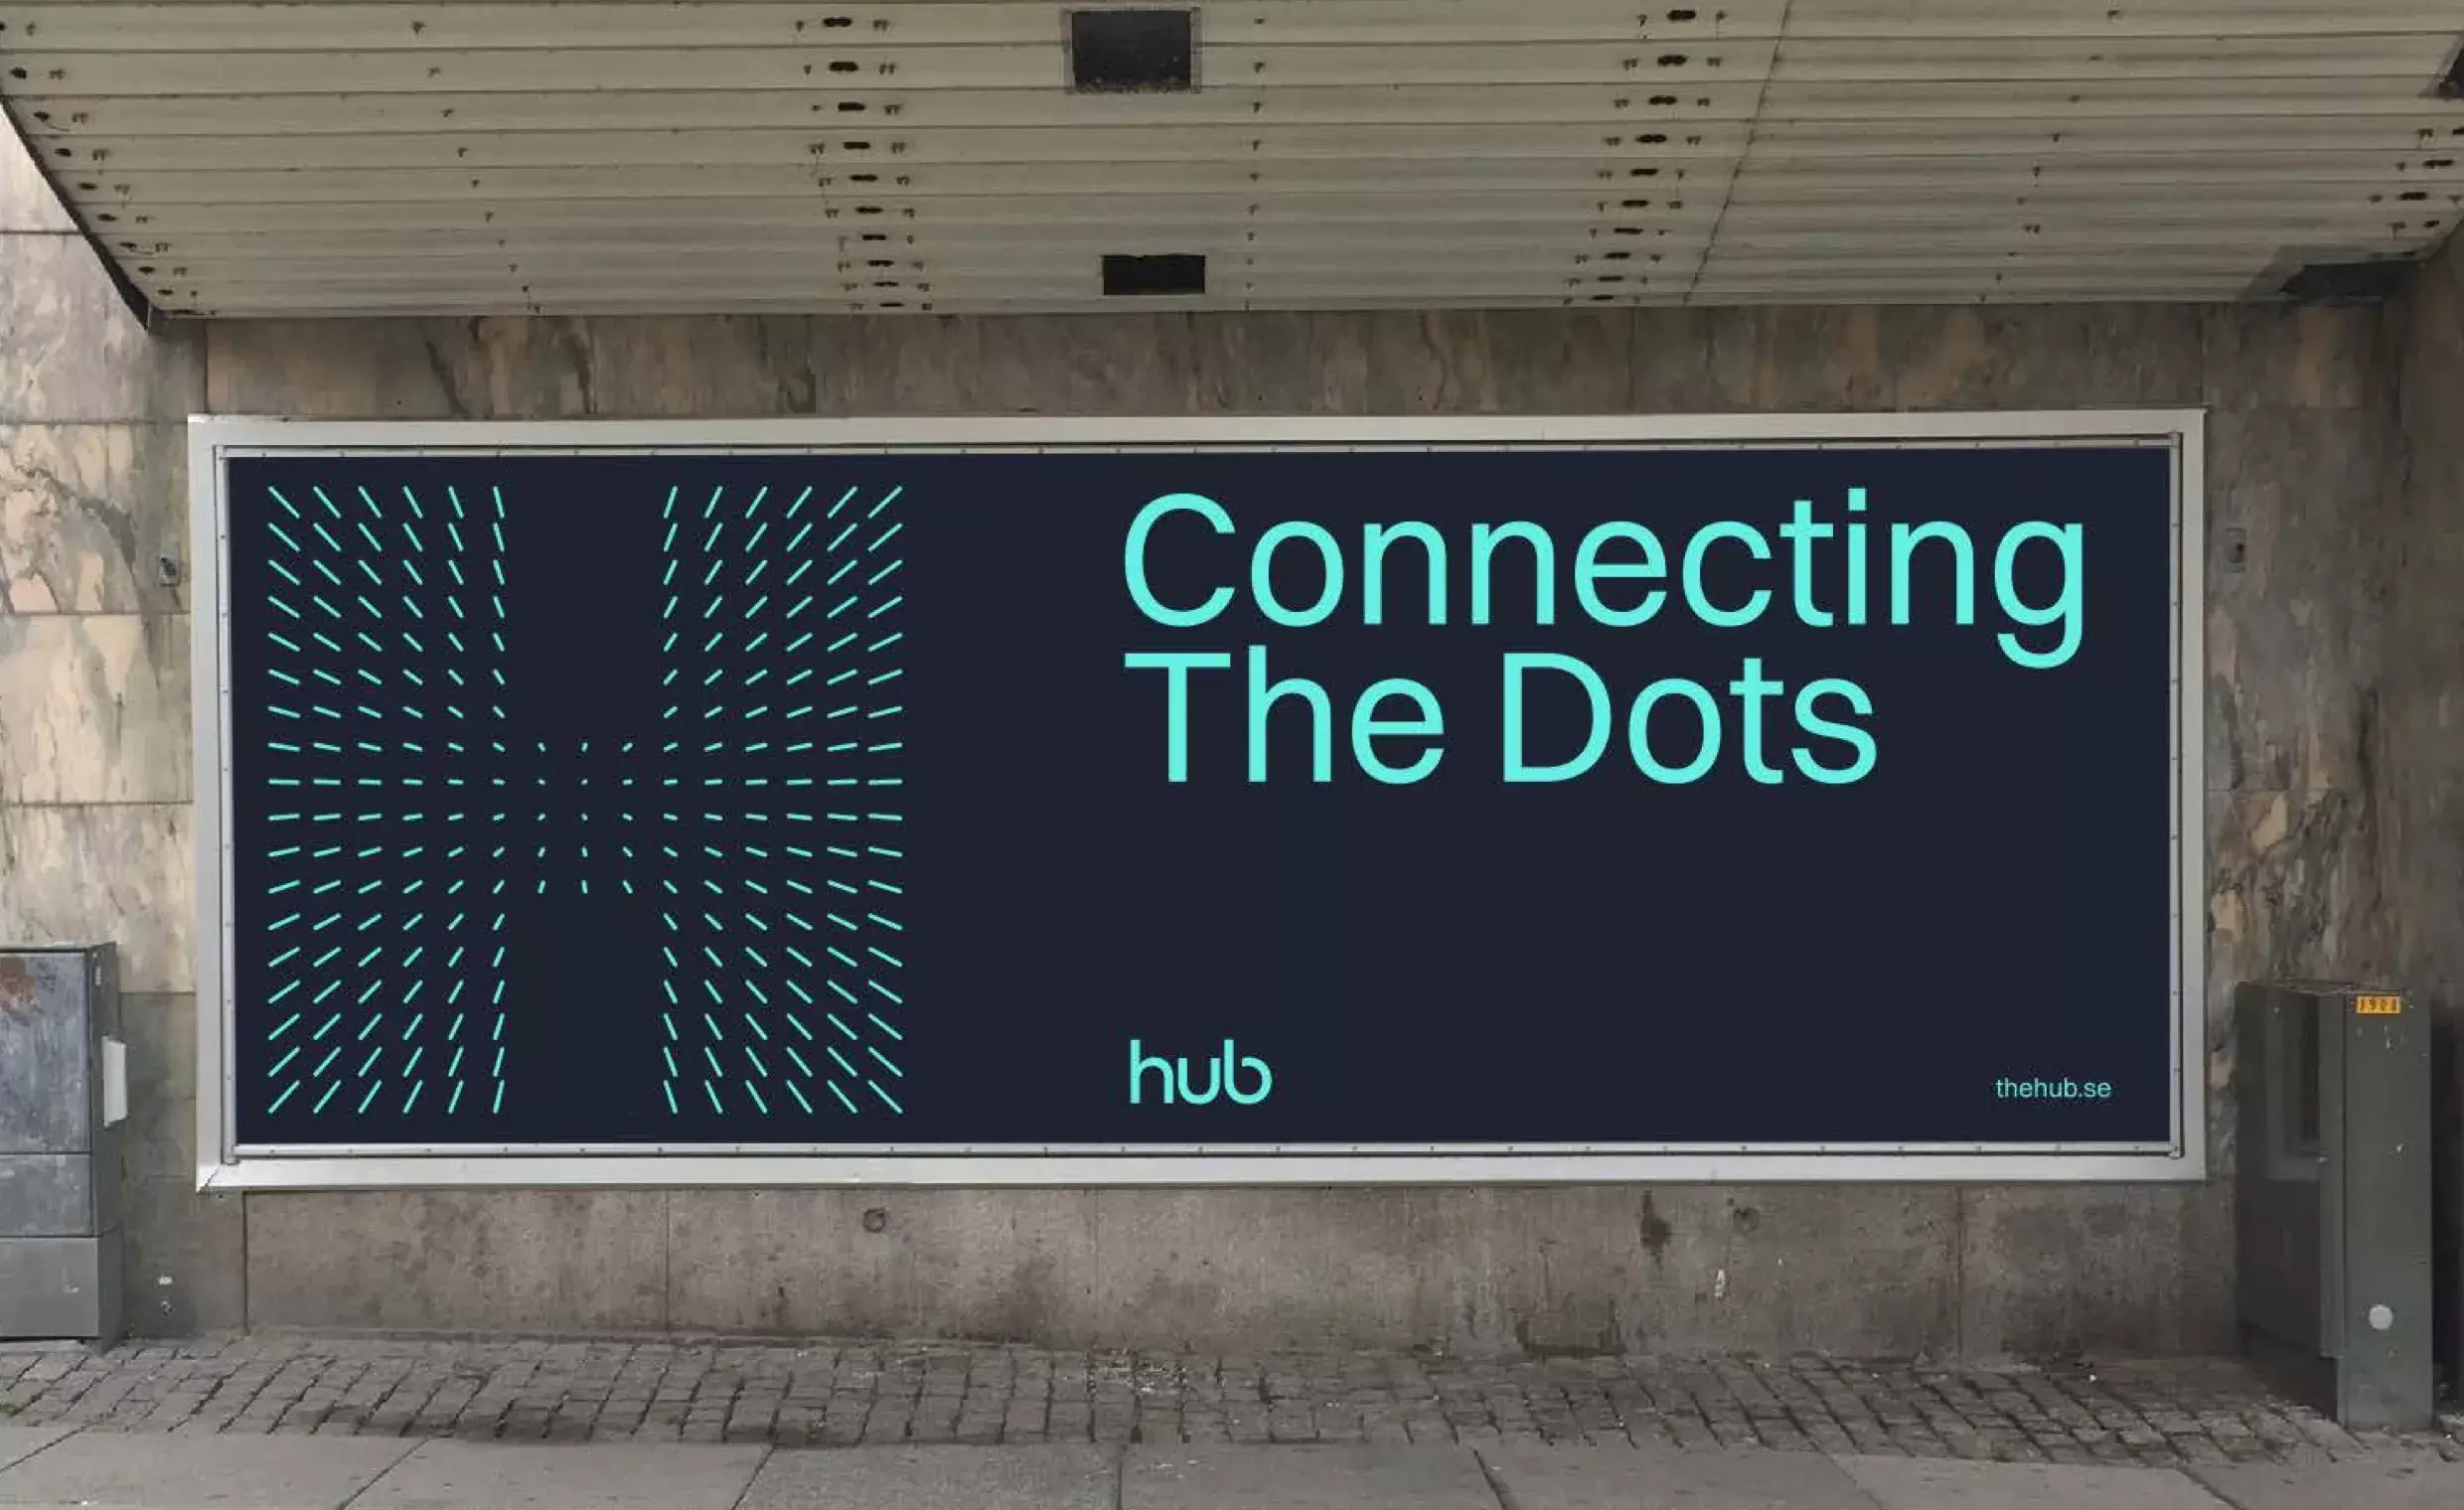 The Hub billboard simulation by BB Agency